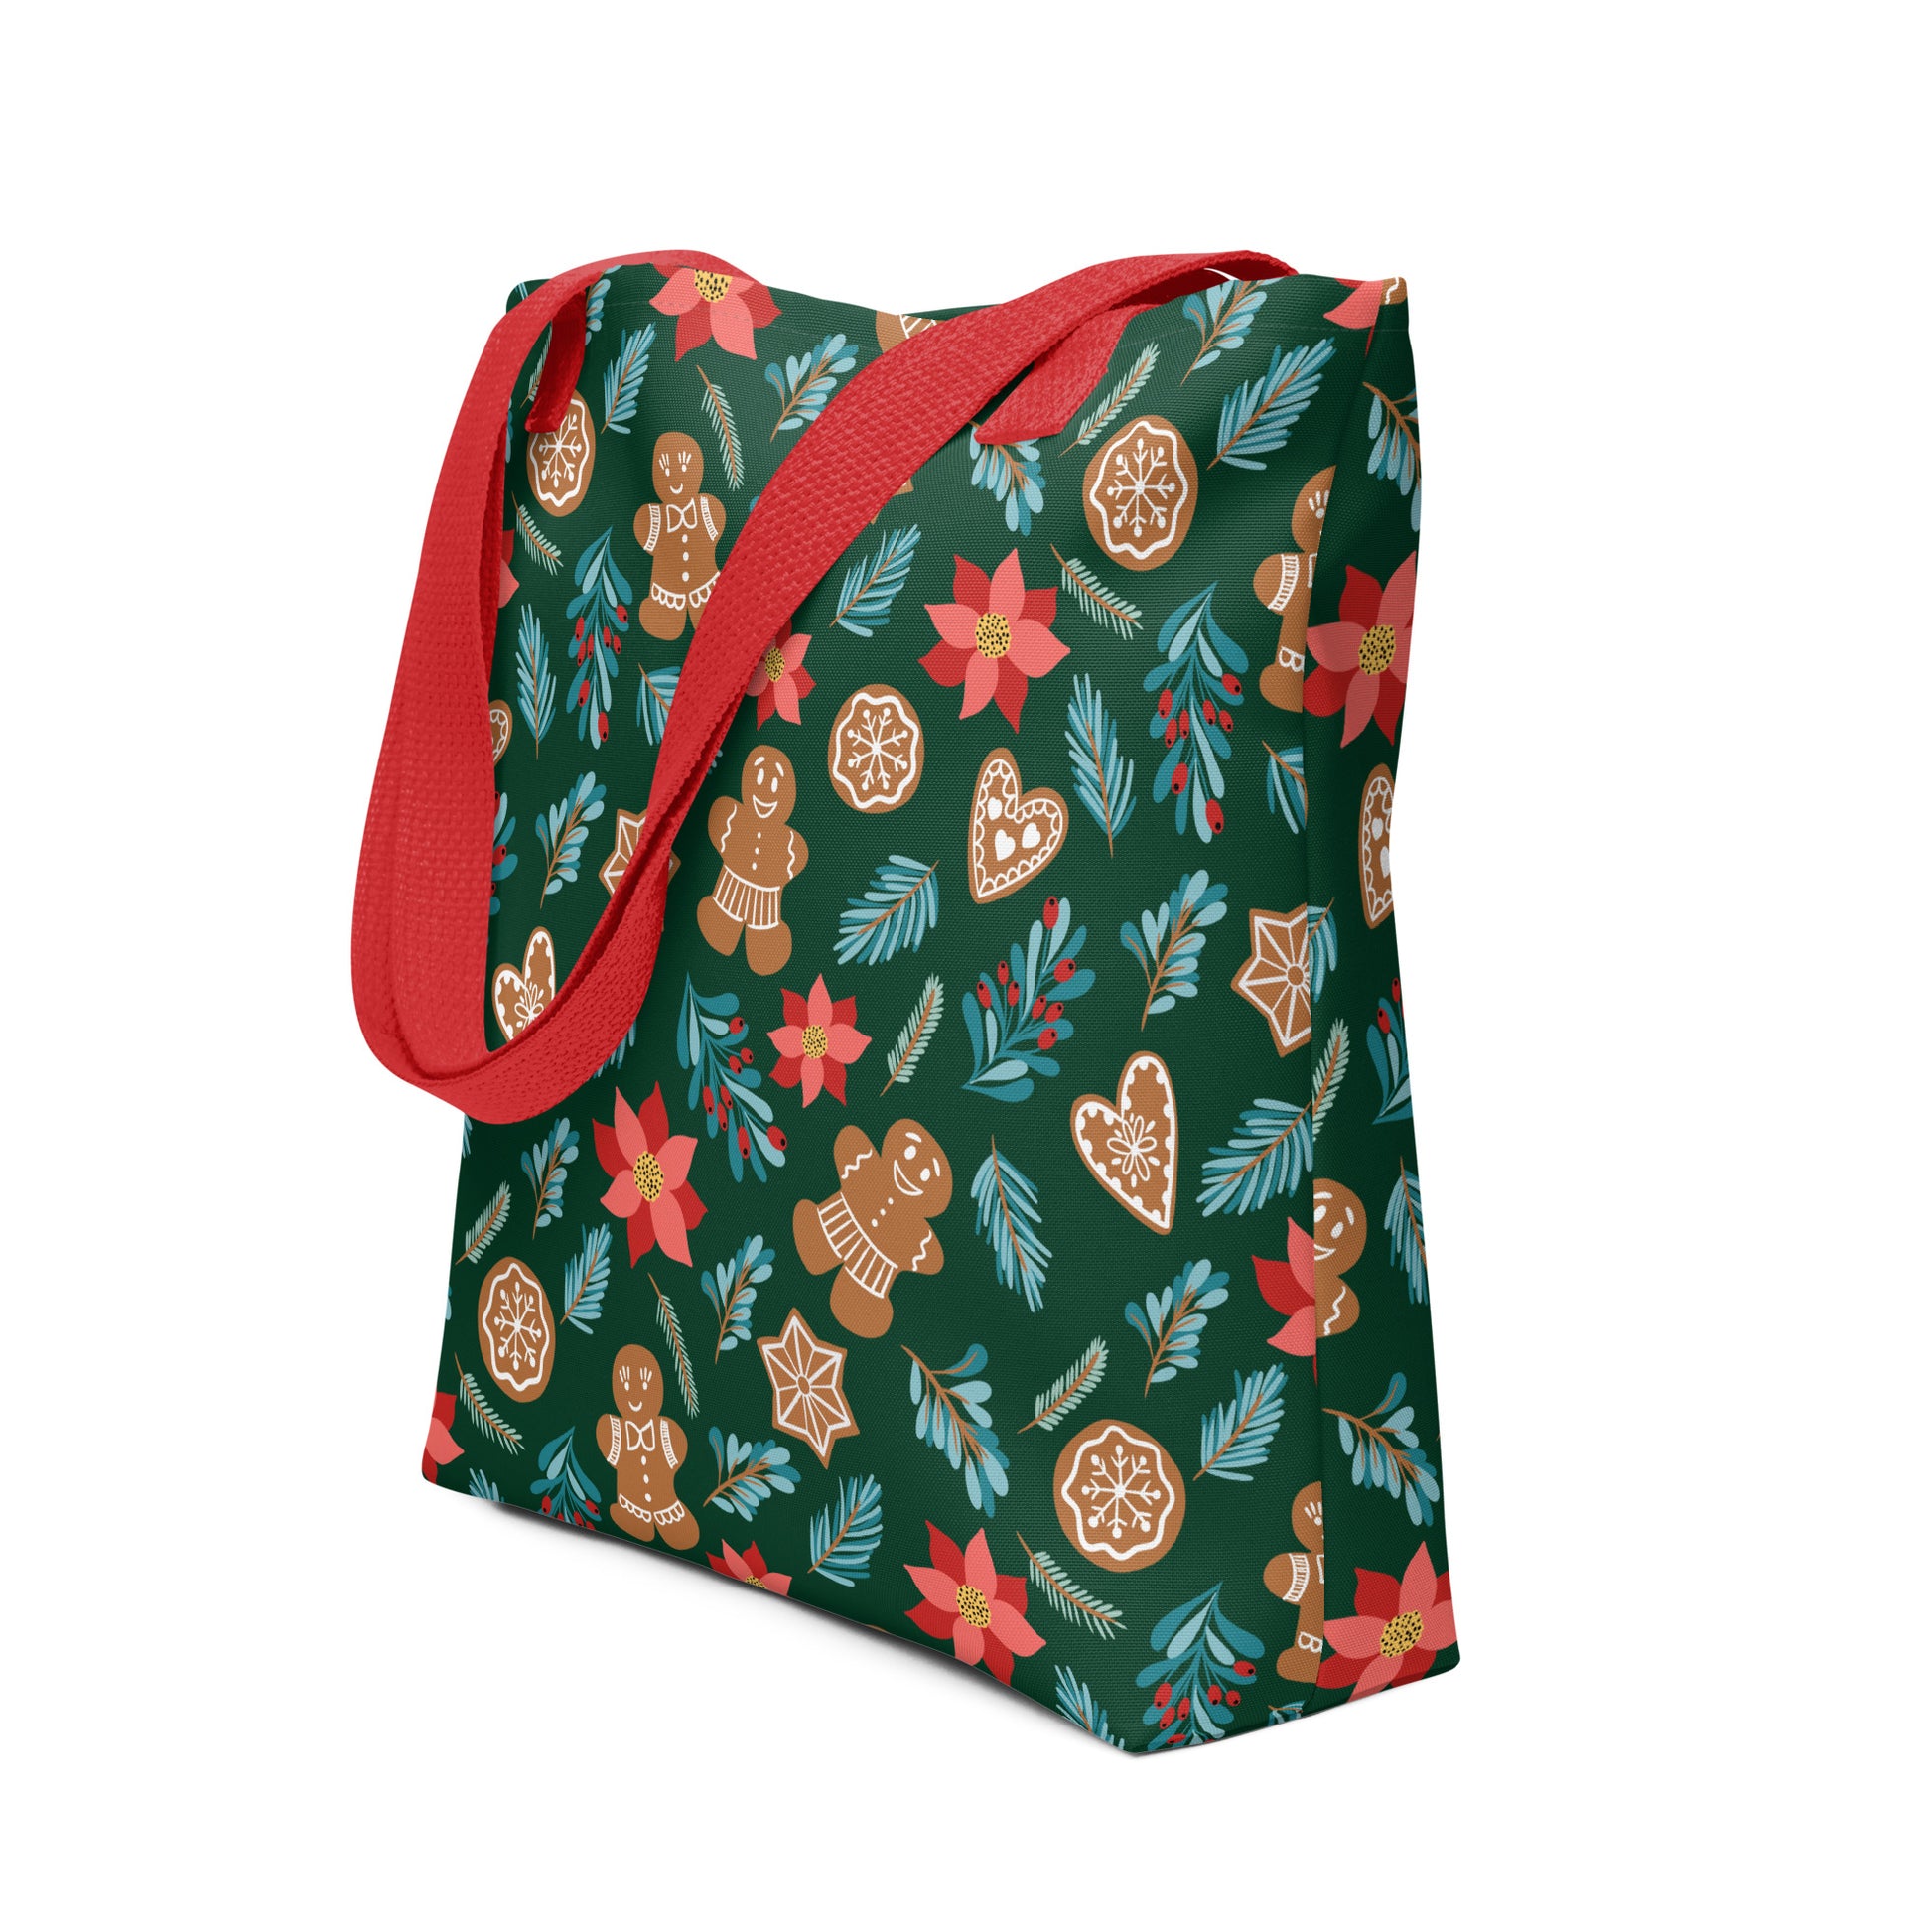 Tote bag - Fantasiapiparit / Gingerbread Fantasy - Bags- Print N Stuff - [designed in Turku Finland]